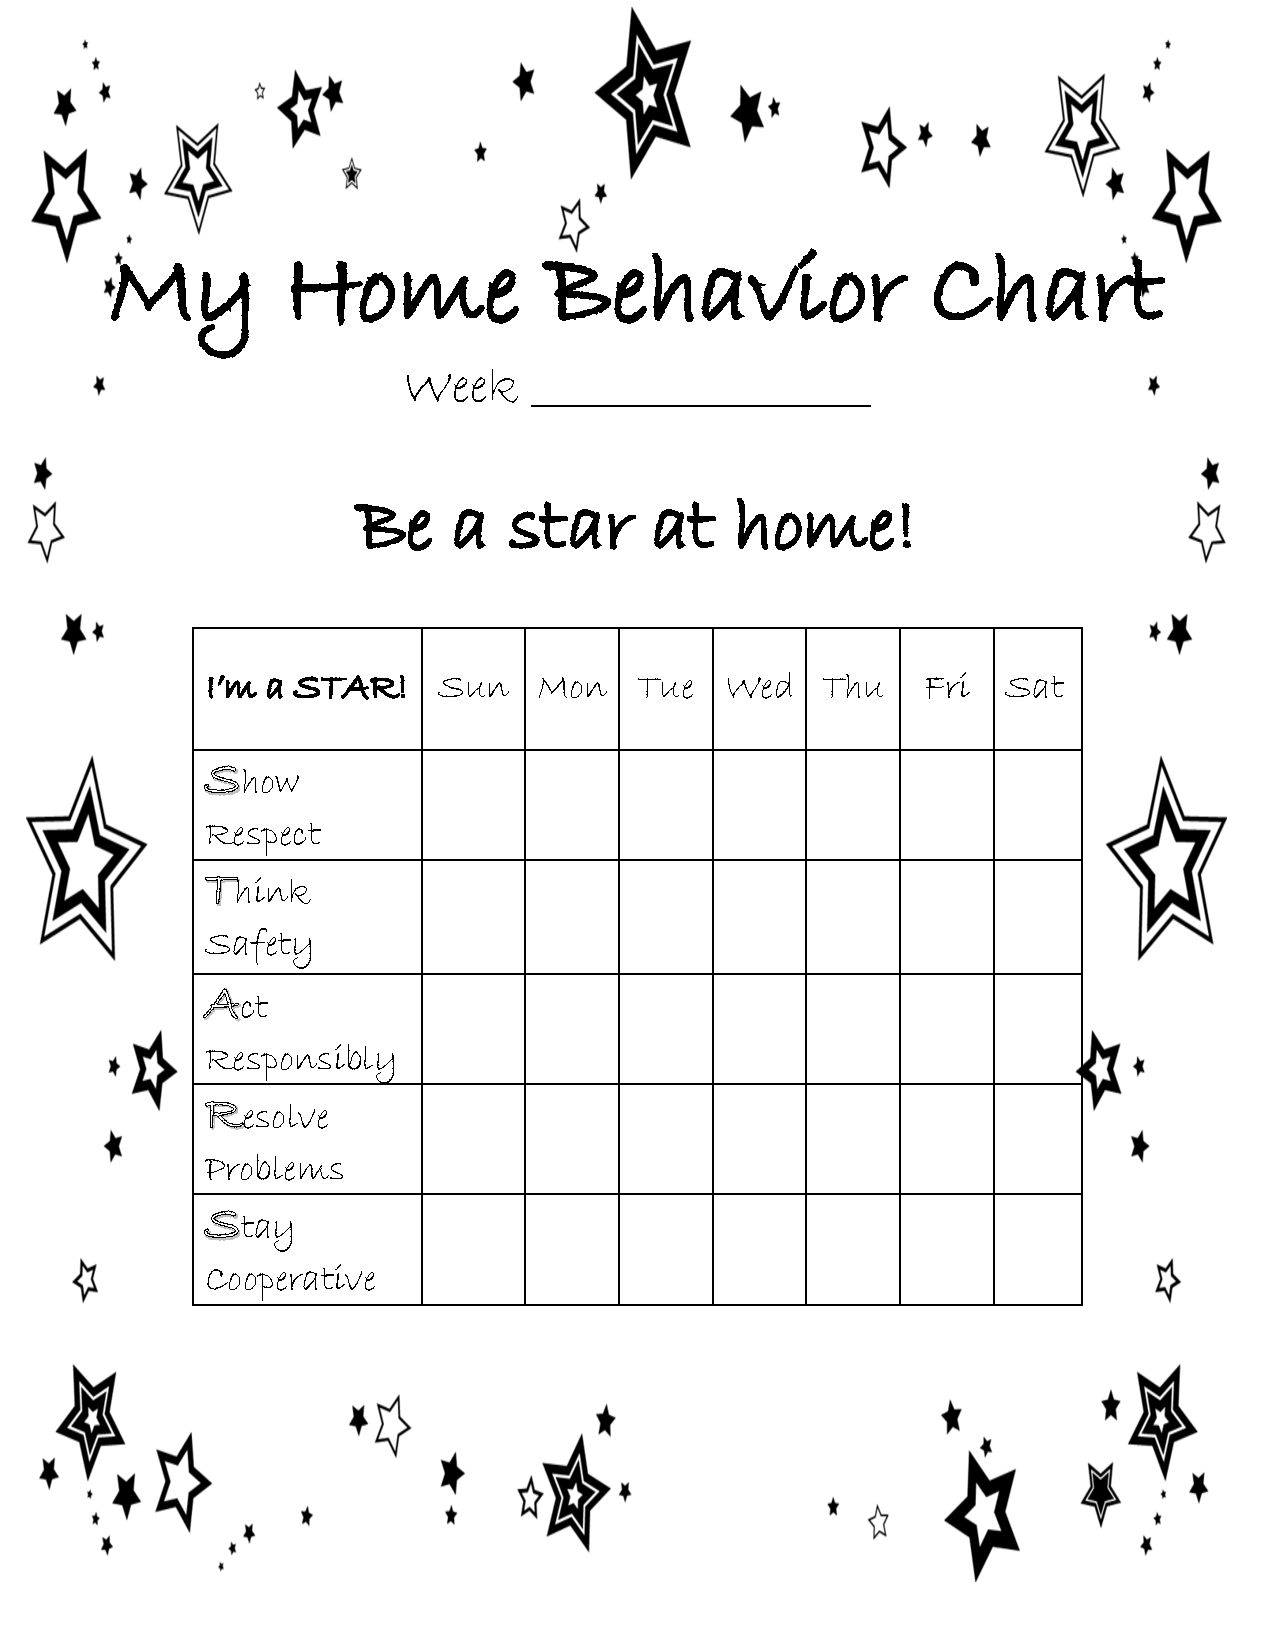 At Home Behavior Chart Home Behavior Charts Behavior Chart Preschool Free Printable Behavior Chart